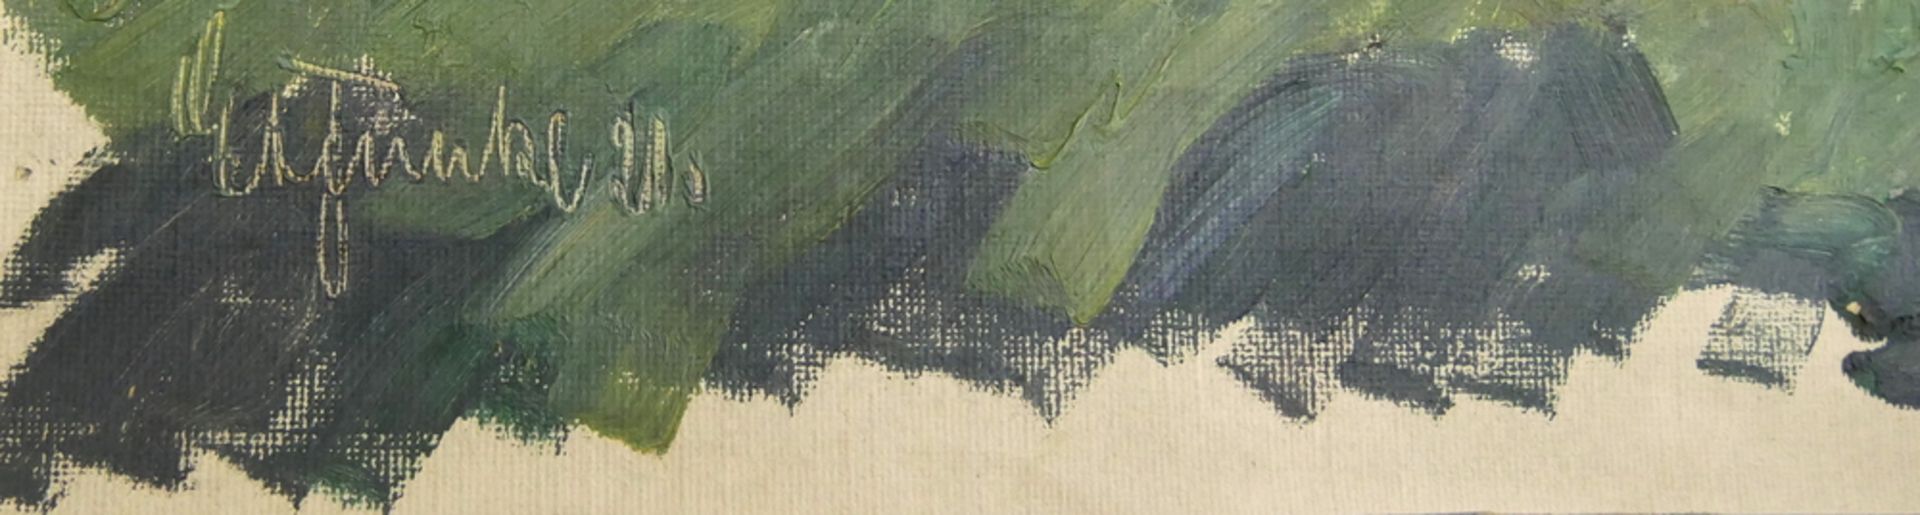 Nachlaß Auflösung des Malers E.A. Funke. Öl auf Leinen von Ernst August Funke,"Waldweg", Teil 1, - Bild 2 aus 2